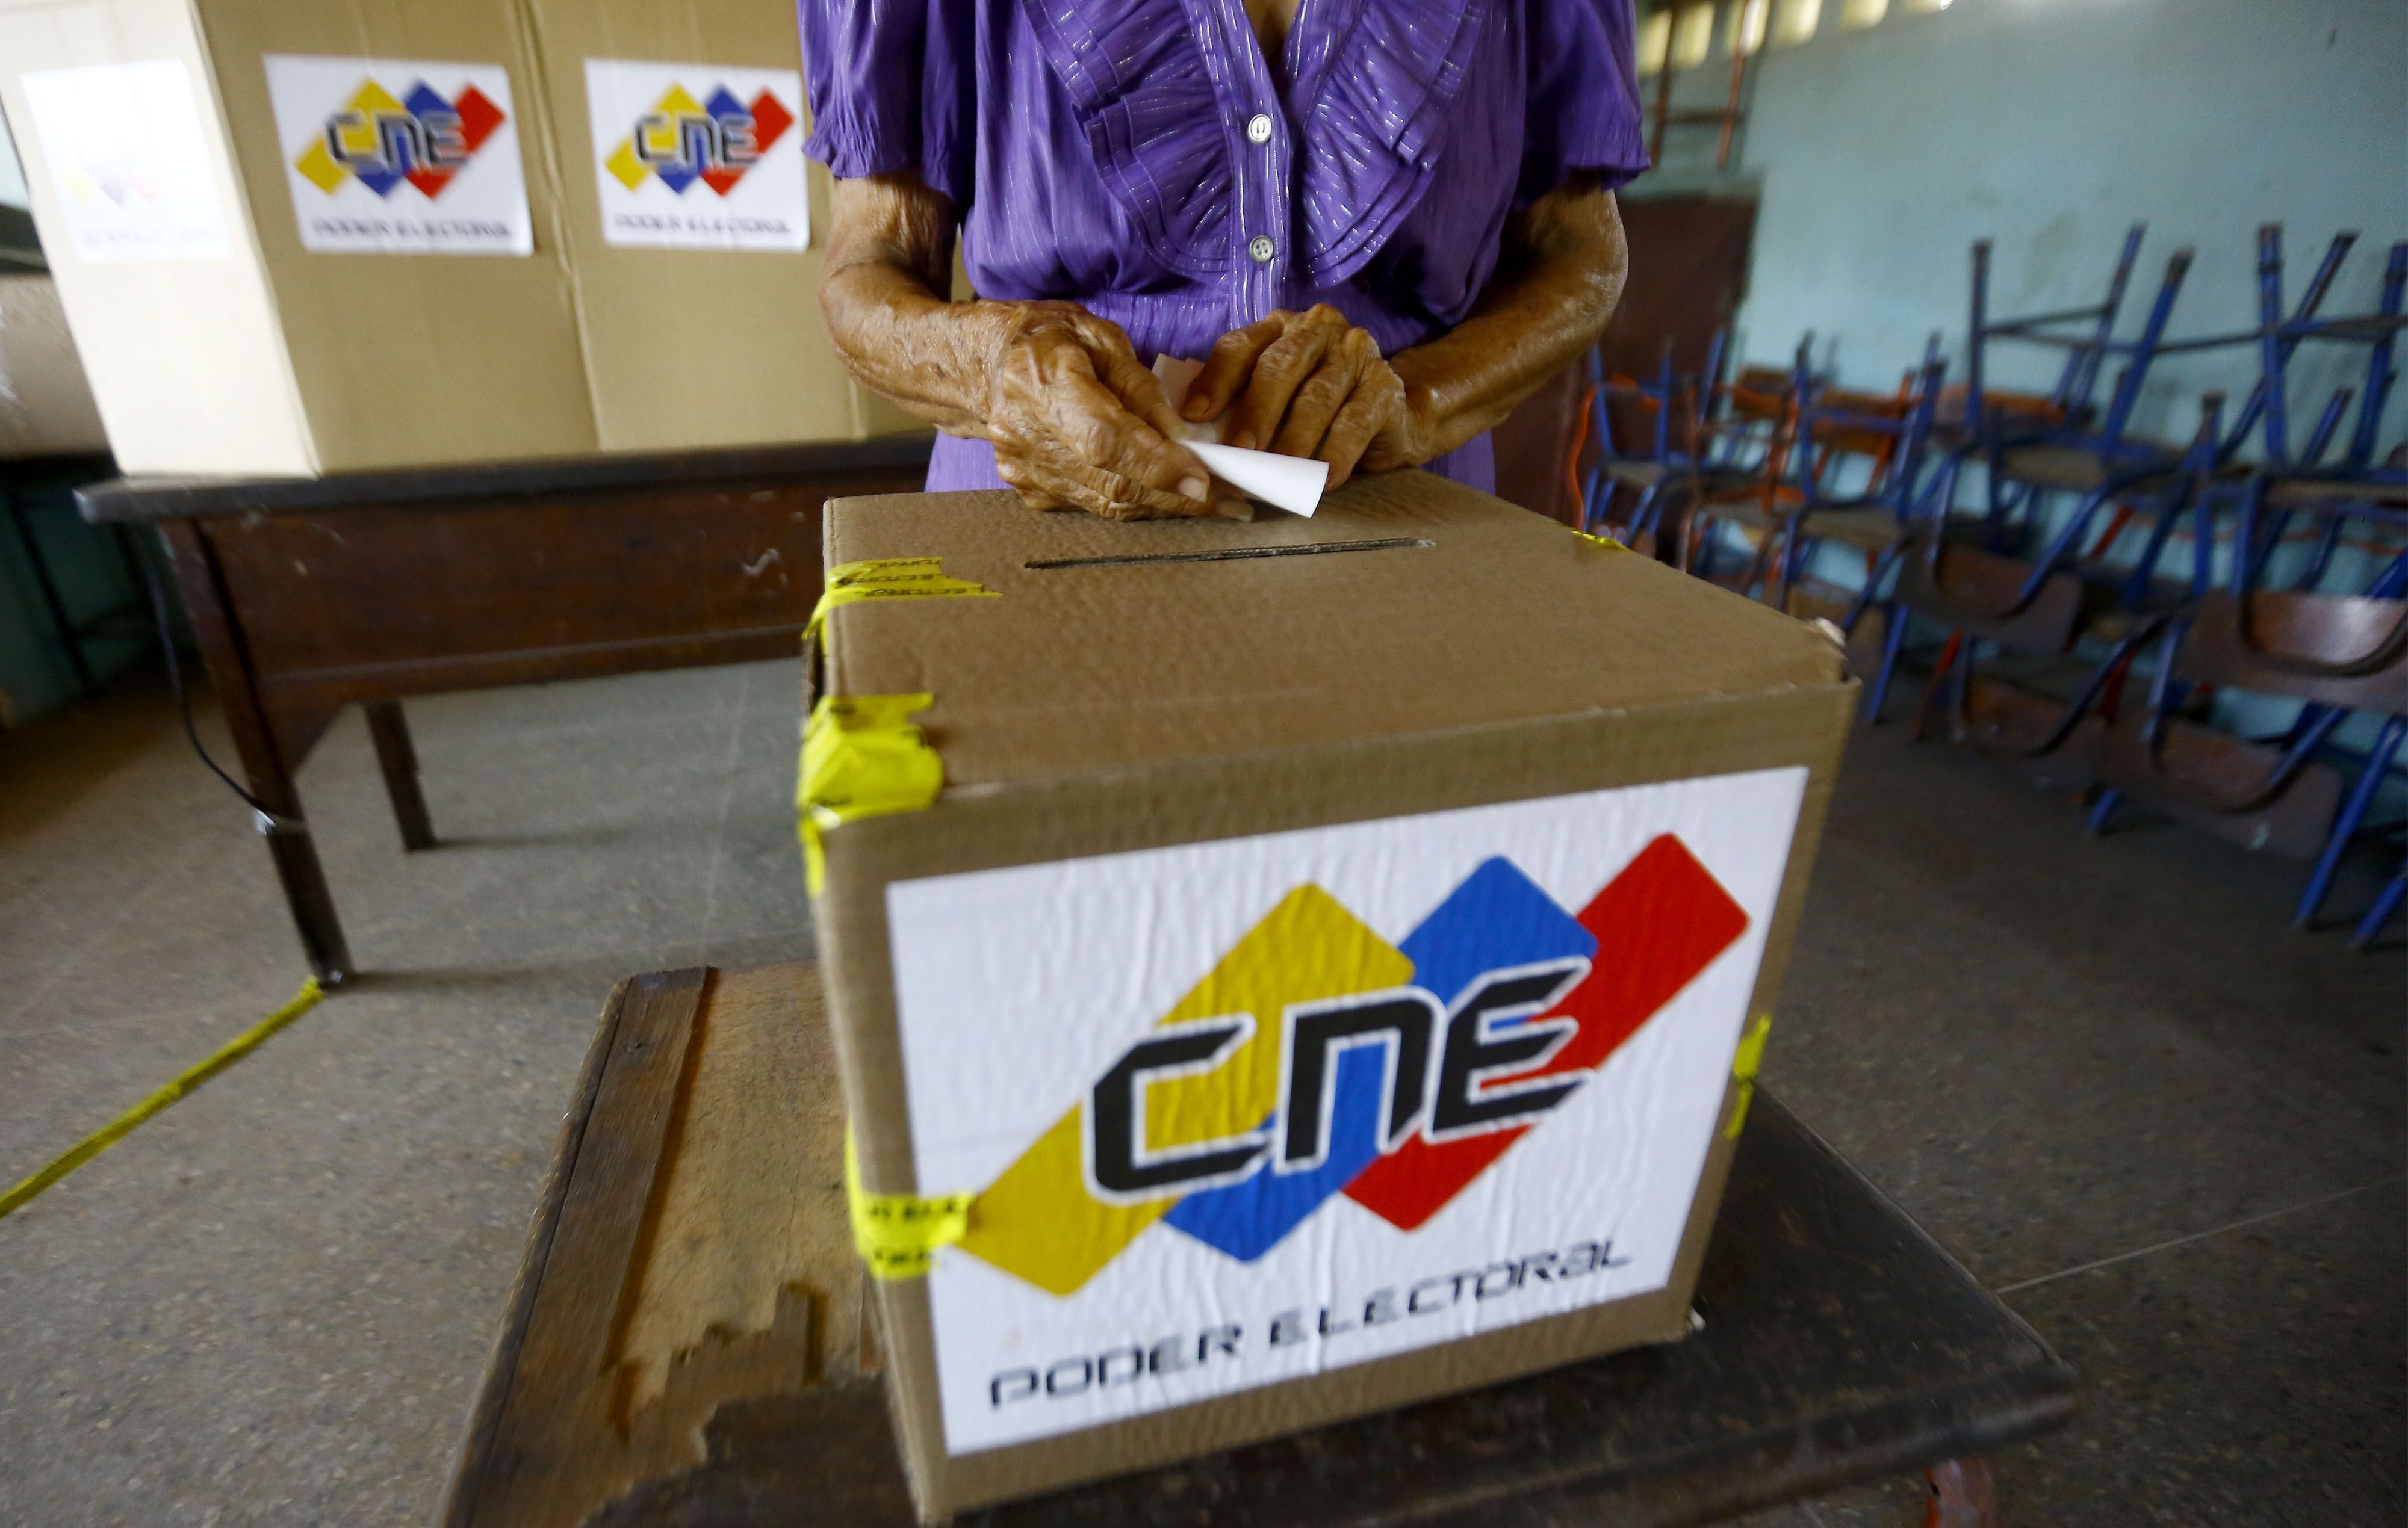 La oposición rechazó la intervención del CNE chavista en las primarias, ya que su propuesta demandaba posponer casi un mes los comicios (Juan Carlos Hernandez/ZUMA Press / DPA)